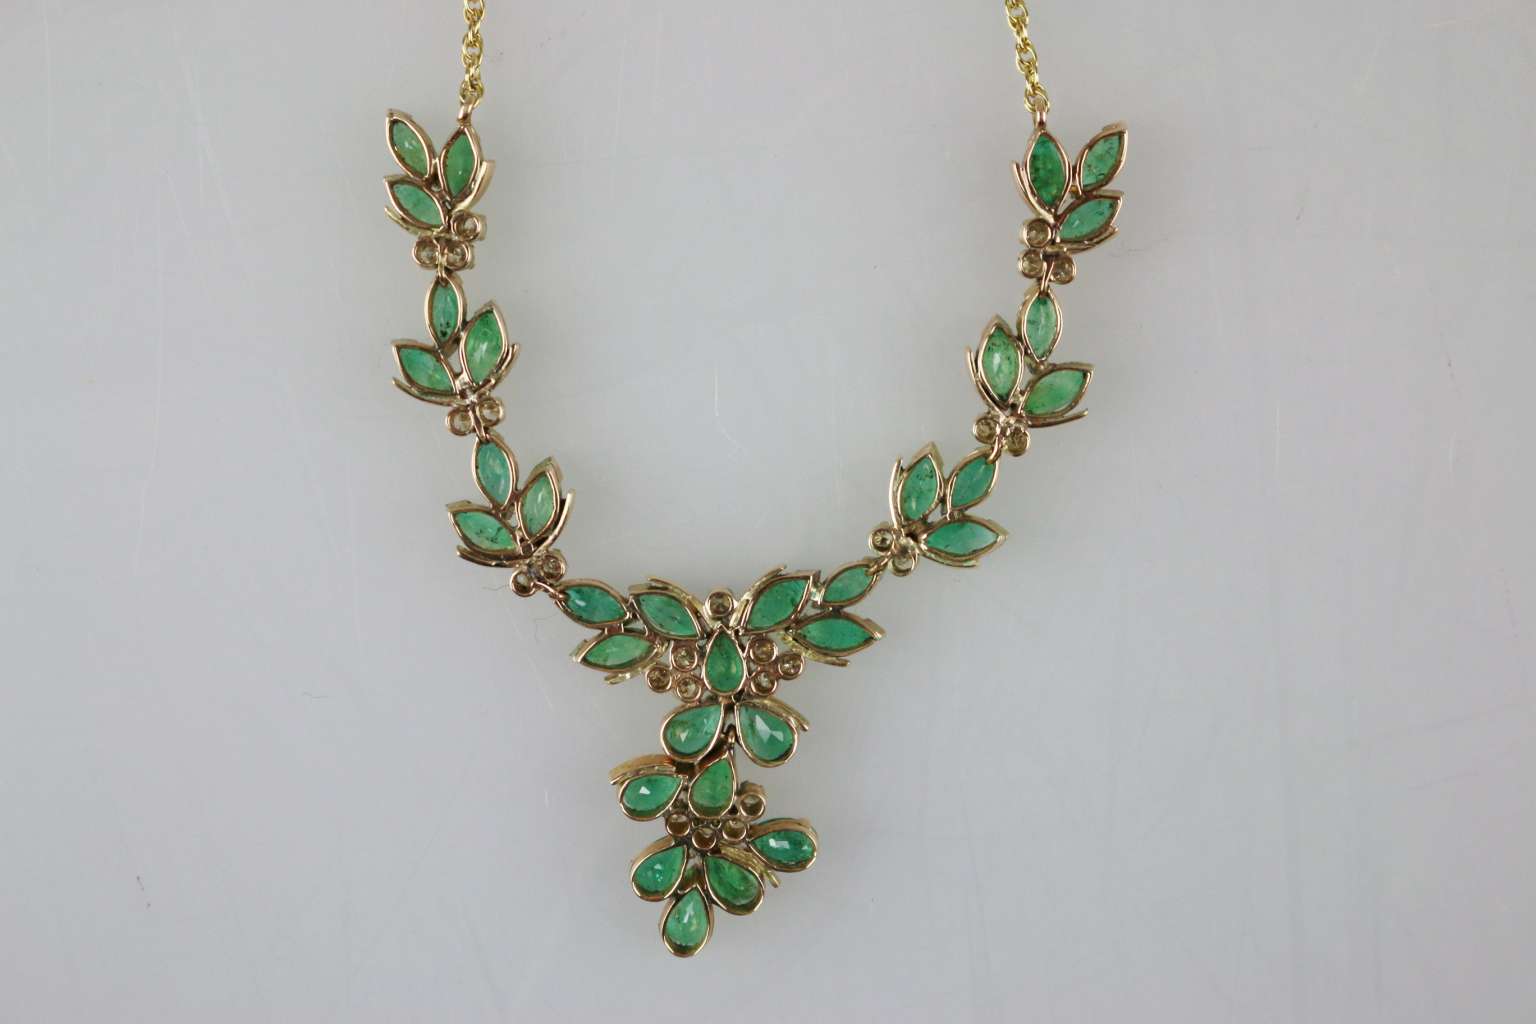 Halskette mit grünen Steinen - Image 3 of 3